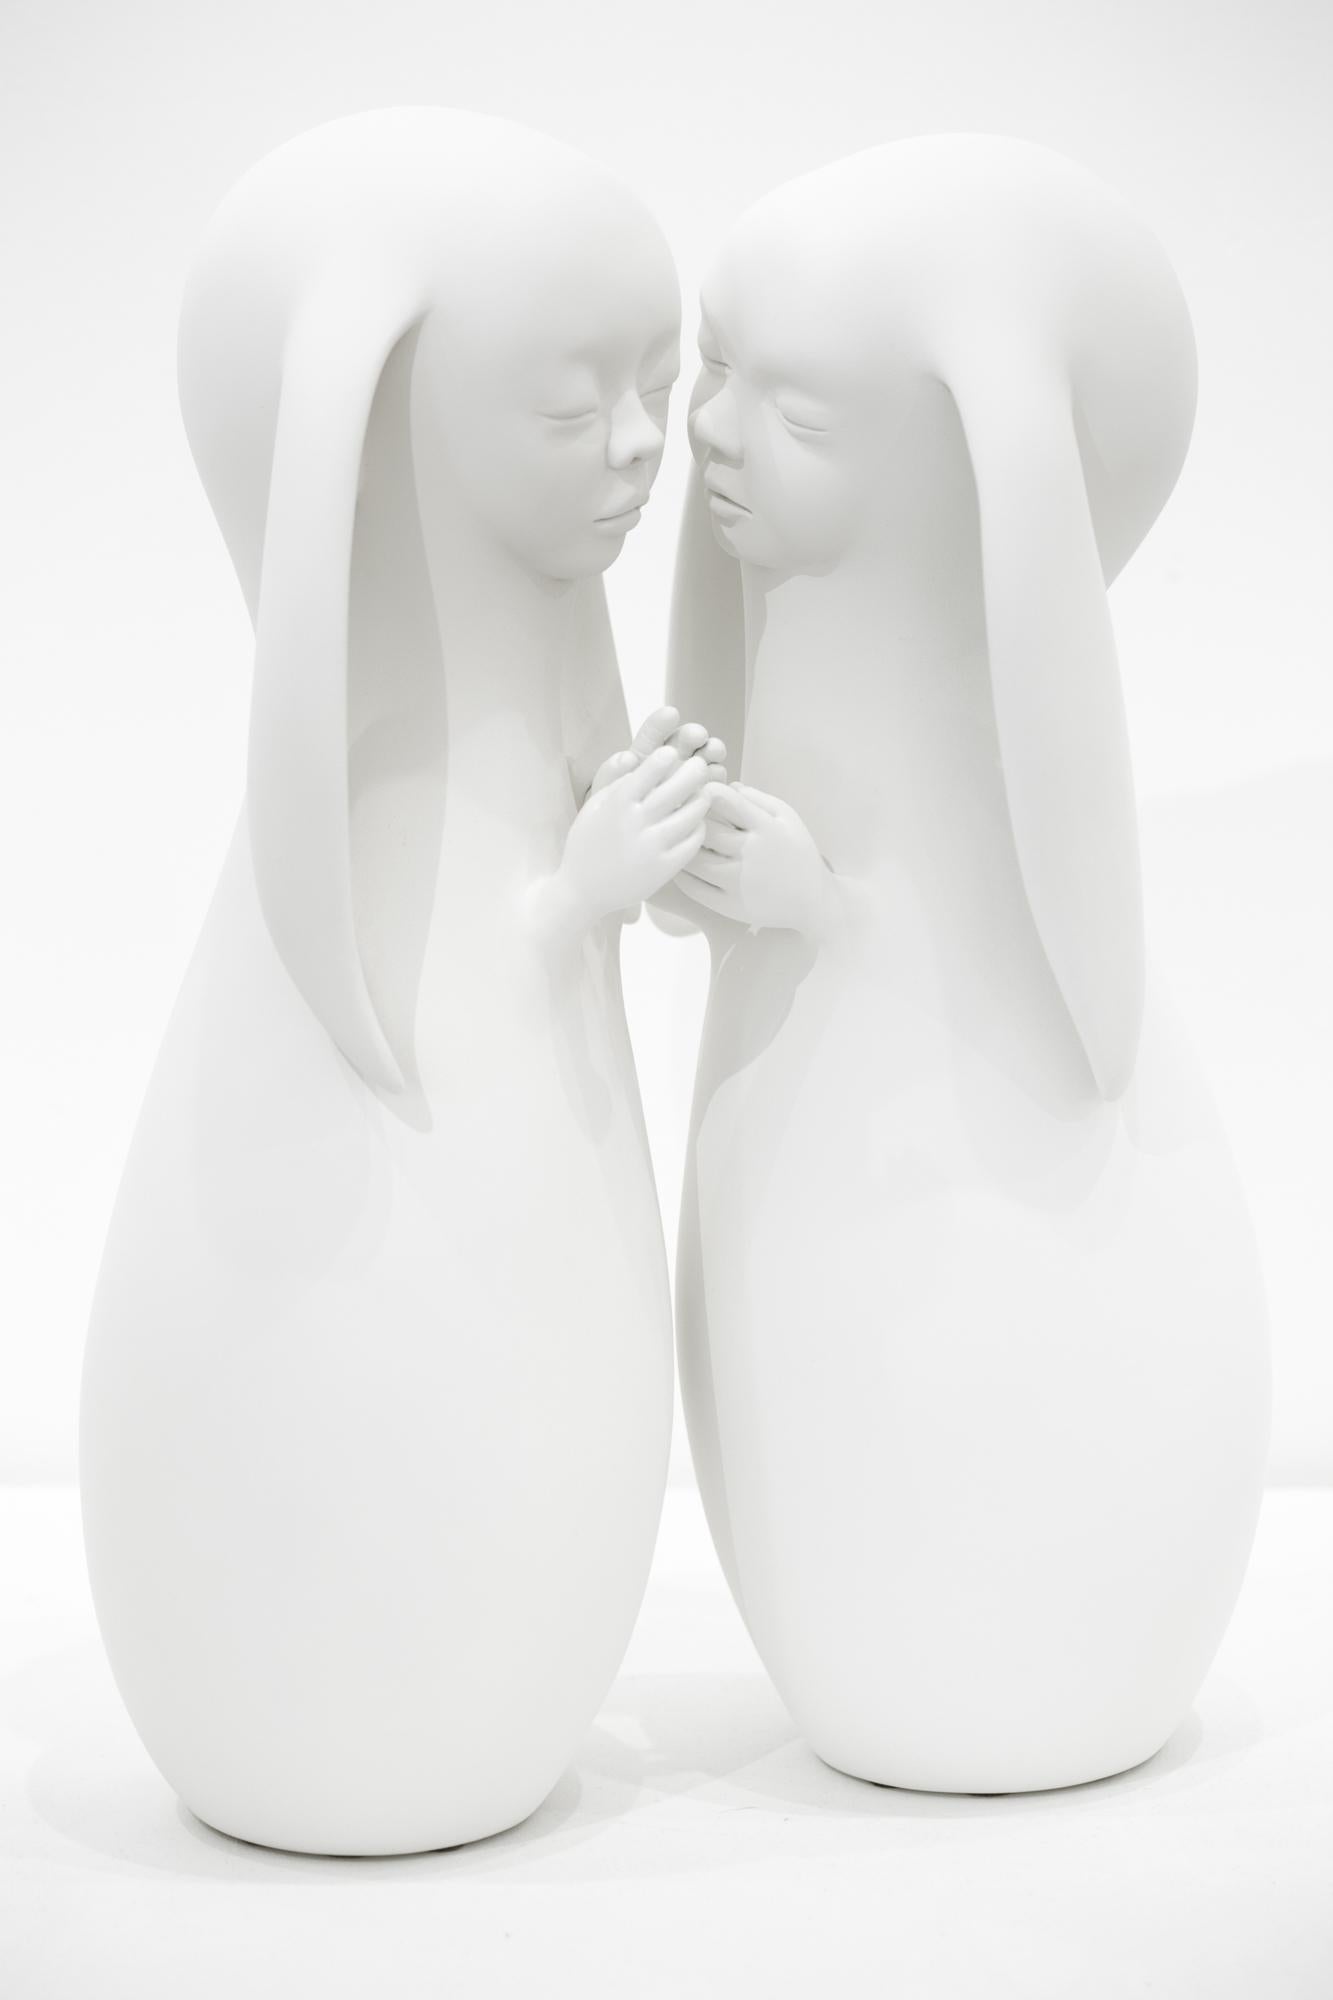 « Couple II », sculpture figurative autoportante en résine blanche, animal imaginé - Sculpture de Clémentine Bal